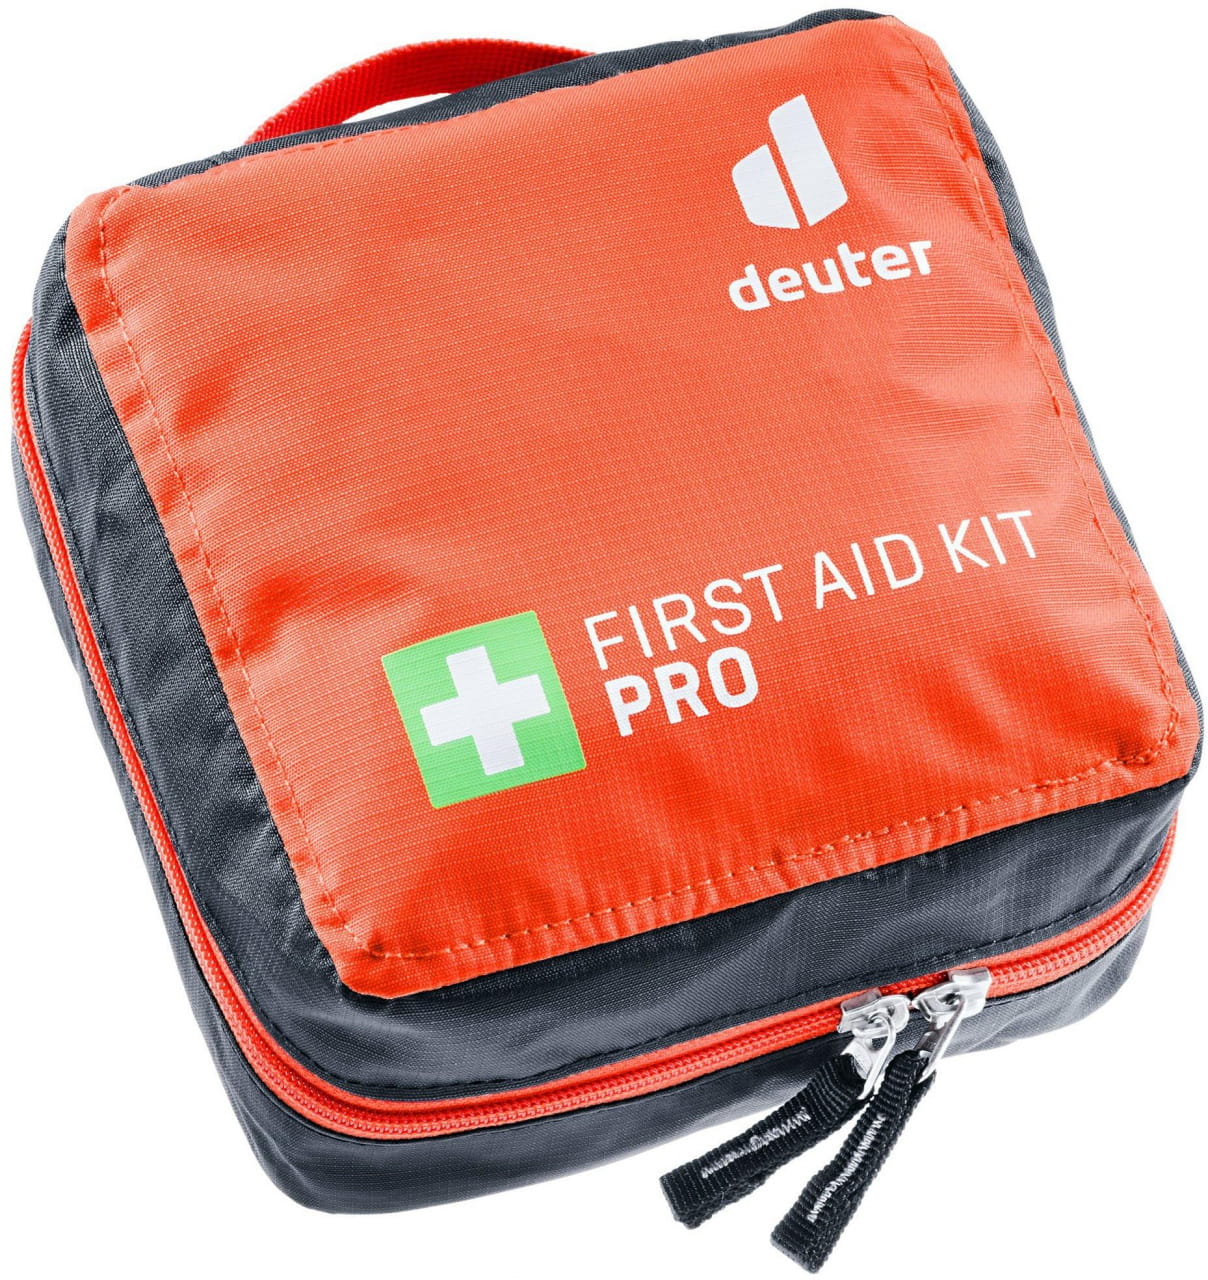 Kültéri kiegészítők Deuter First Aid Kit Pro